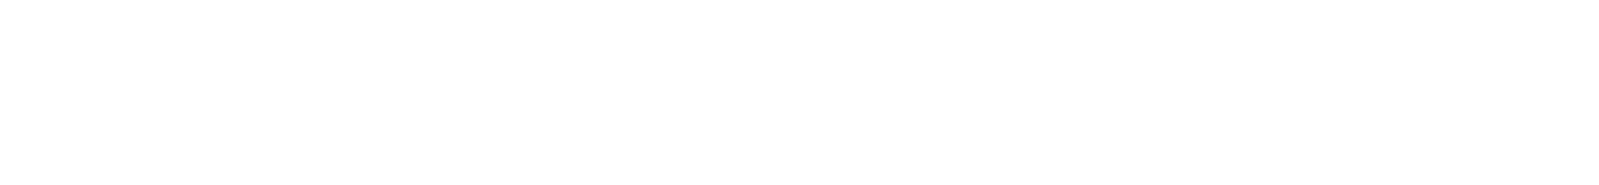 Eiken Chemical logo grand pour les fonds sombres (PNG transparent)